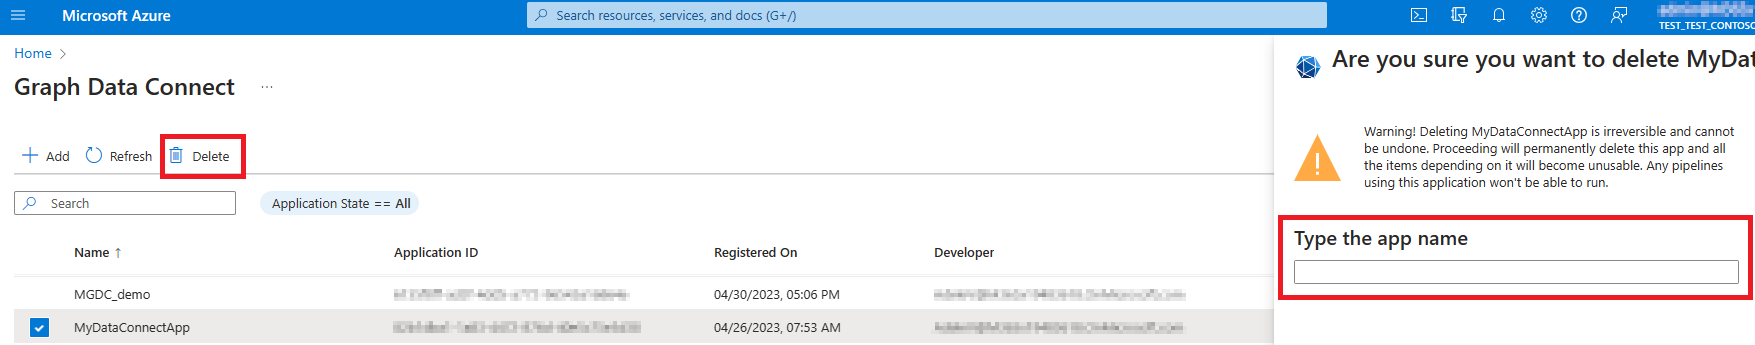 Captura de pantalla de la página de entrada Eliminar registro de registro de la aplicación.